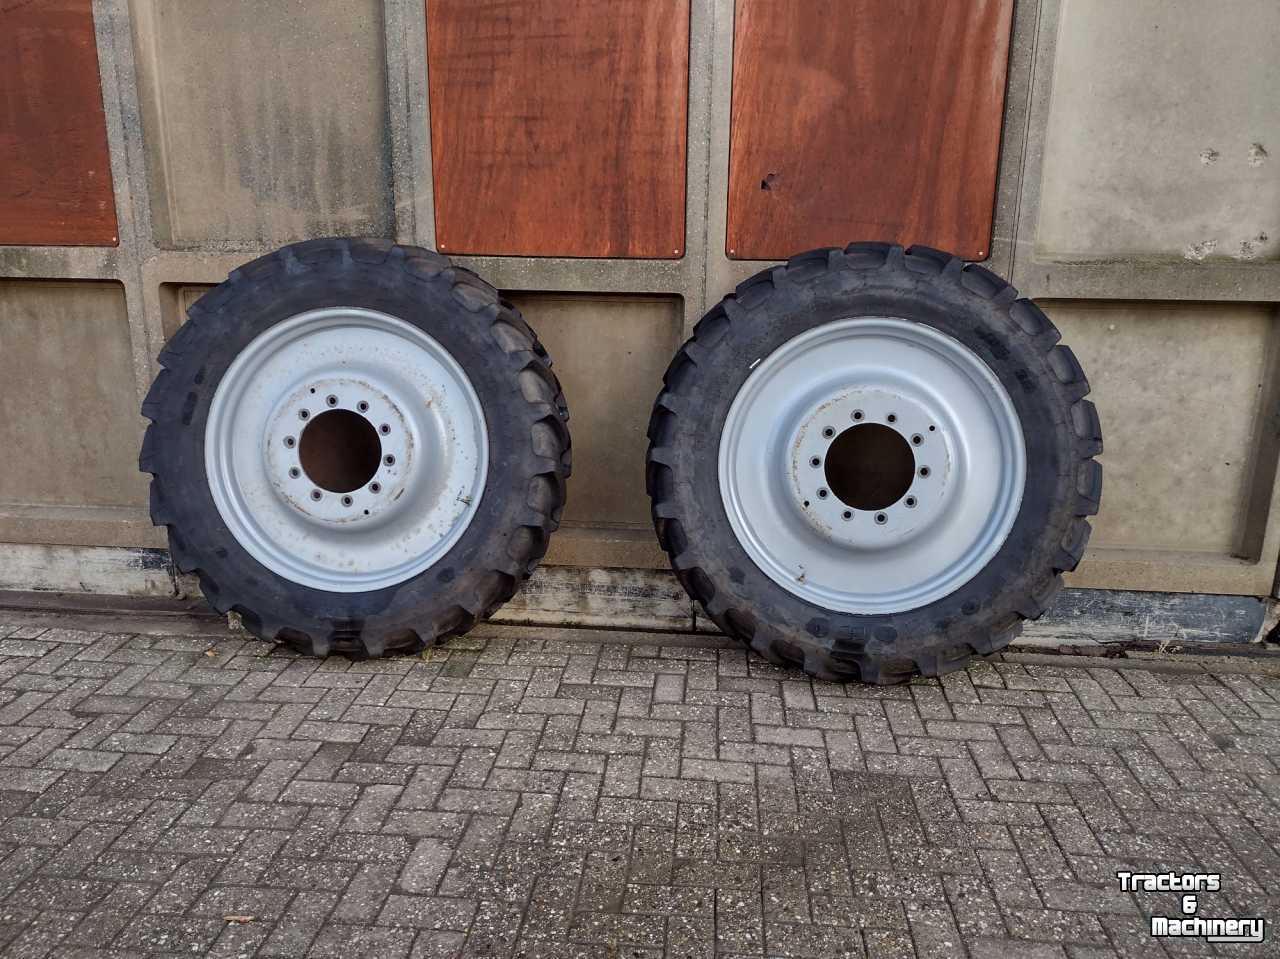 Wheels, Tyres, Rims & Dual spacers Firestone 320/85R36